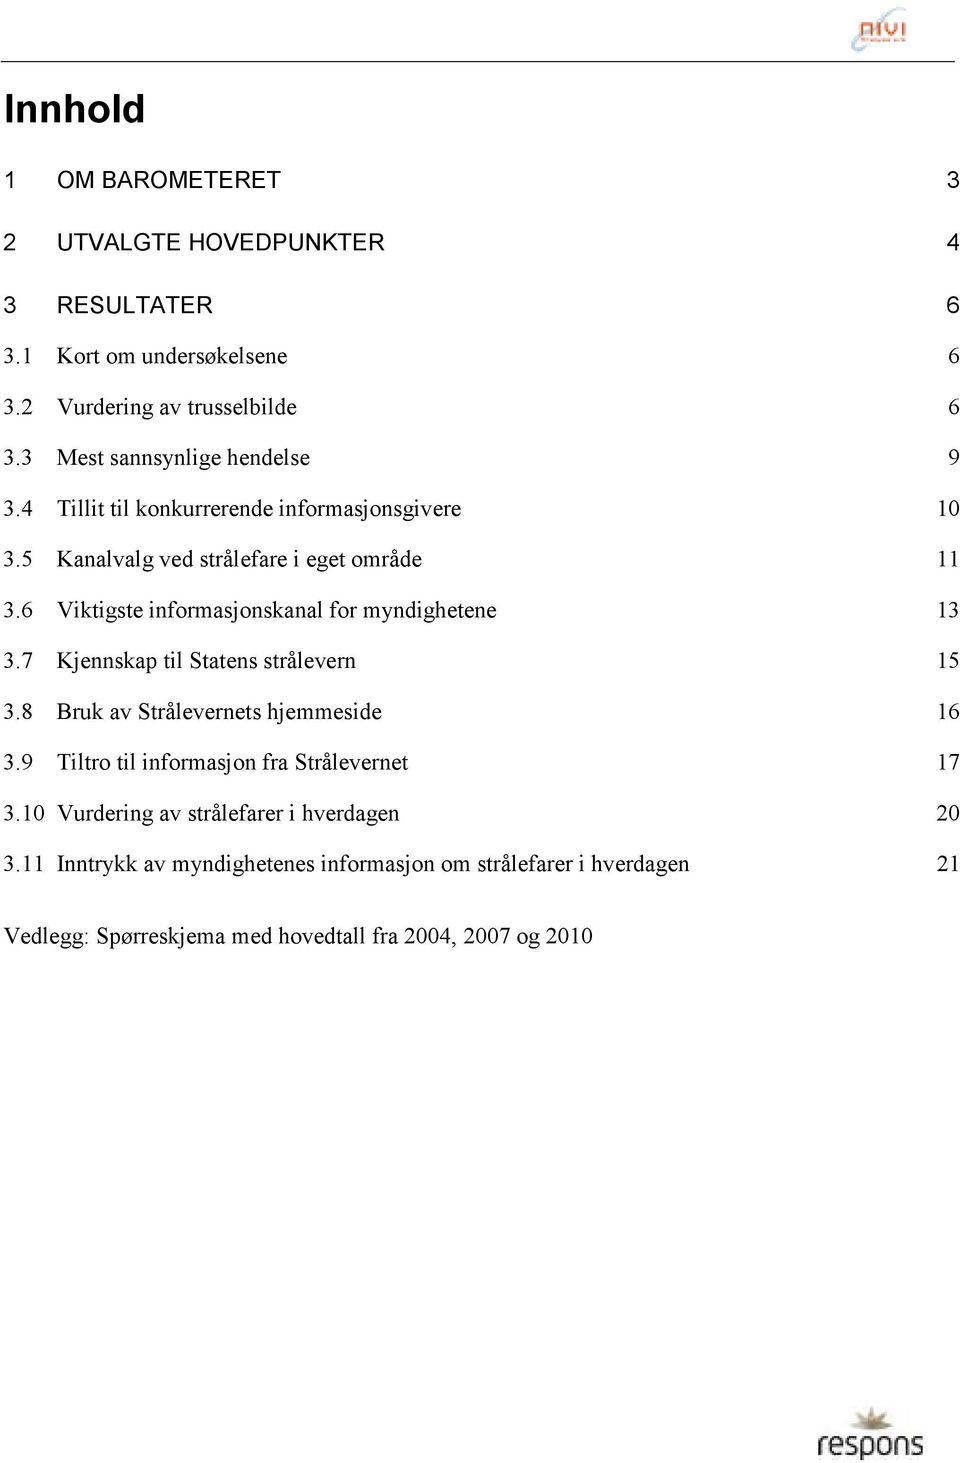 6 Viktigste informasjonskanal for myndighetene 3 3.7 Kjennskap til Statens strålevern 5 3.8 Bruk av Strålevernets hjemmeside 6 3.